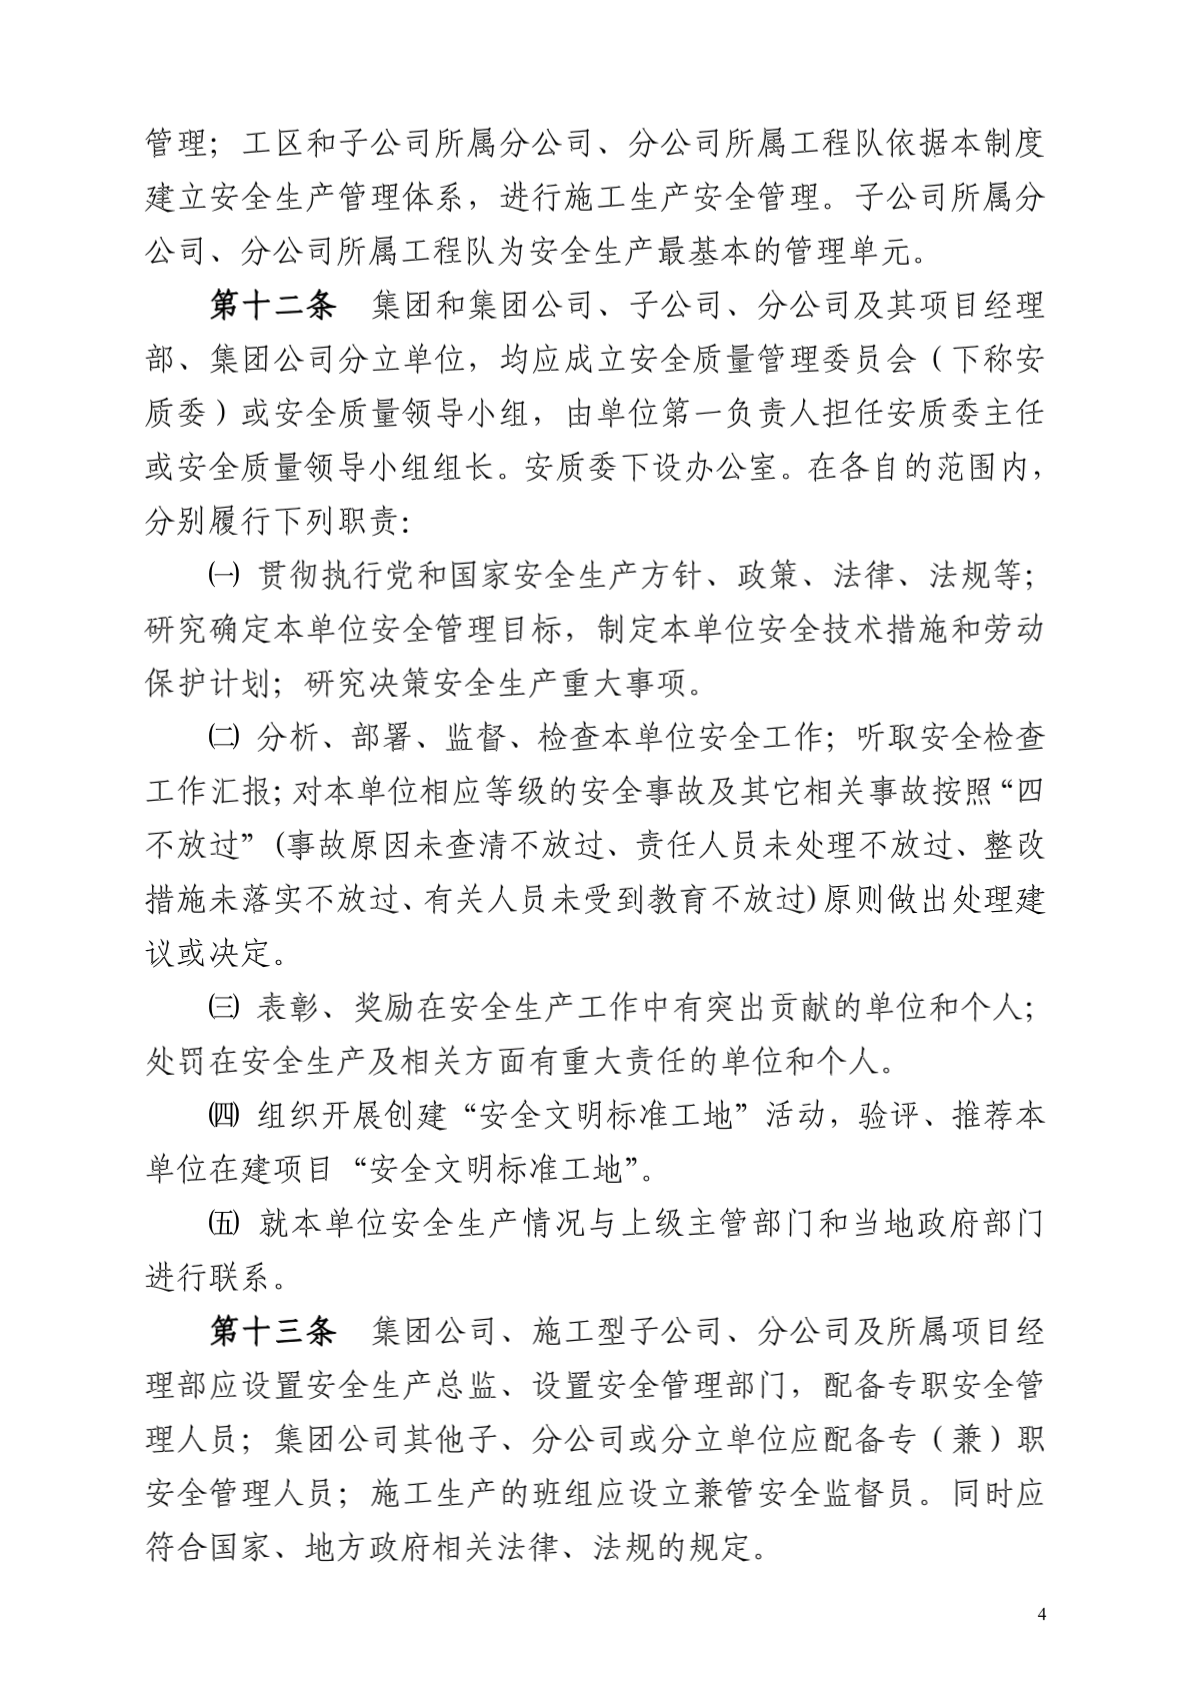 中铁隧道集团安全生产管理制度目录_文档下载